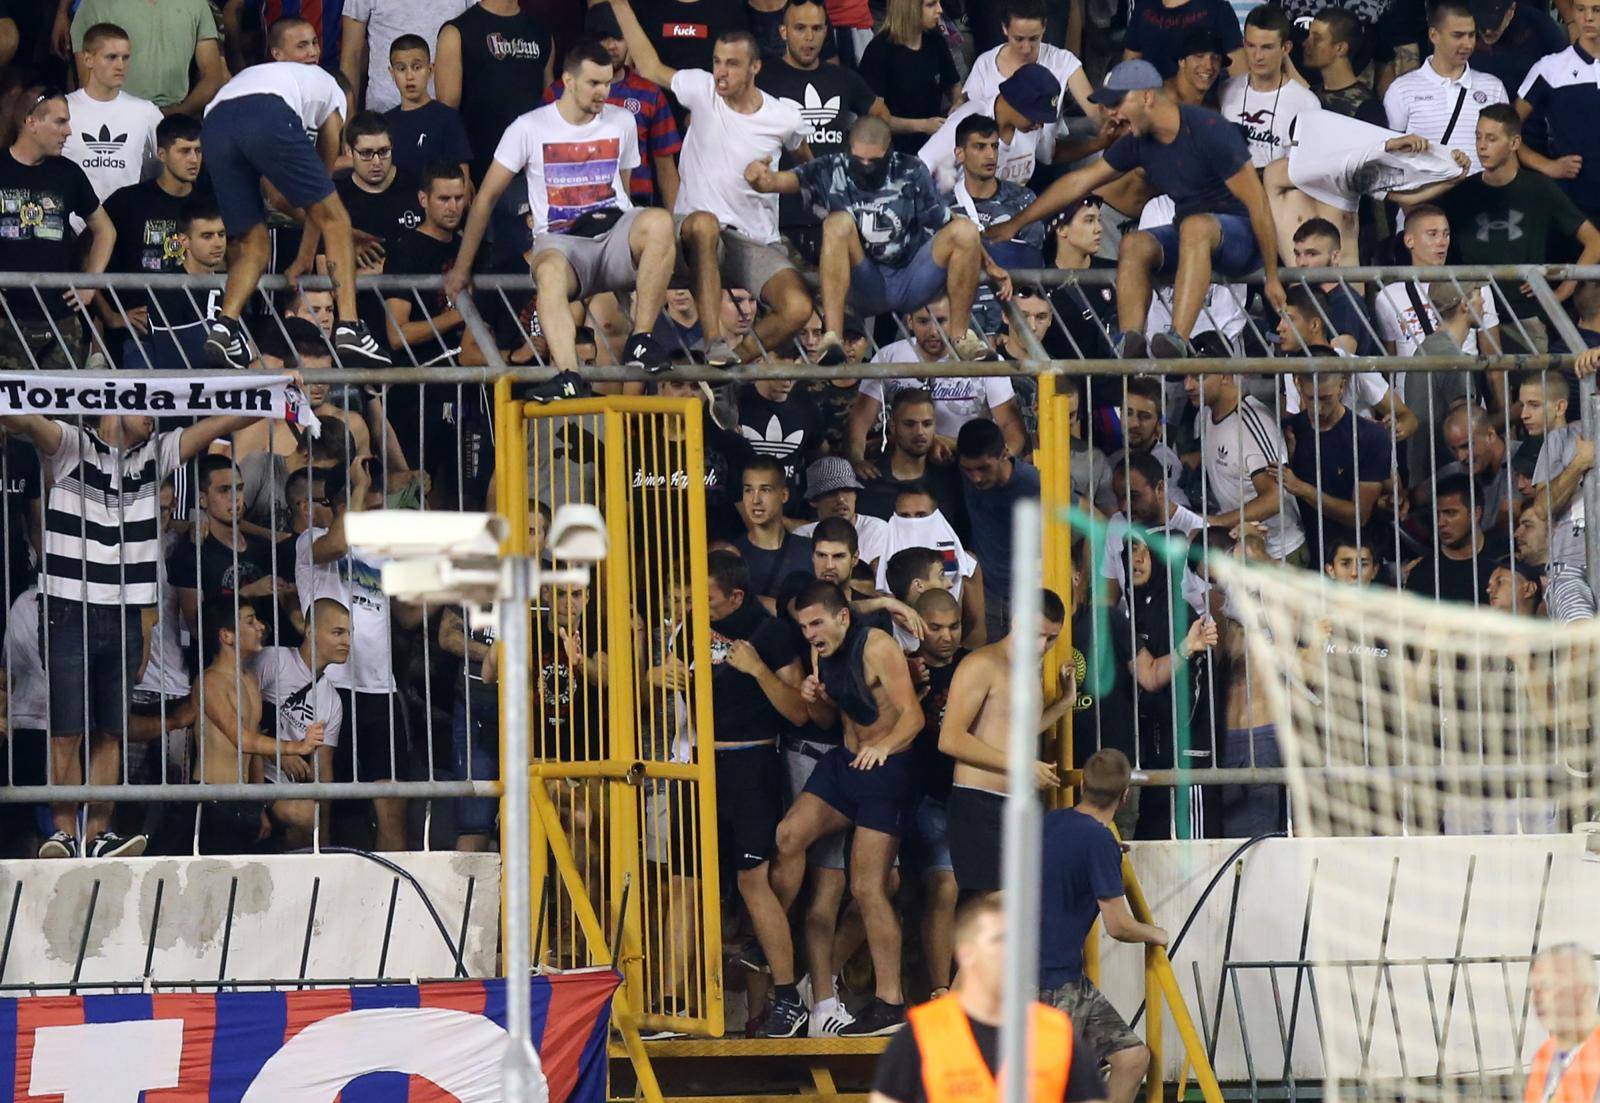 Najveća blamaža Hajduka ikad: Izbacili su ih malteški amateri